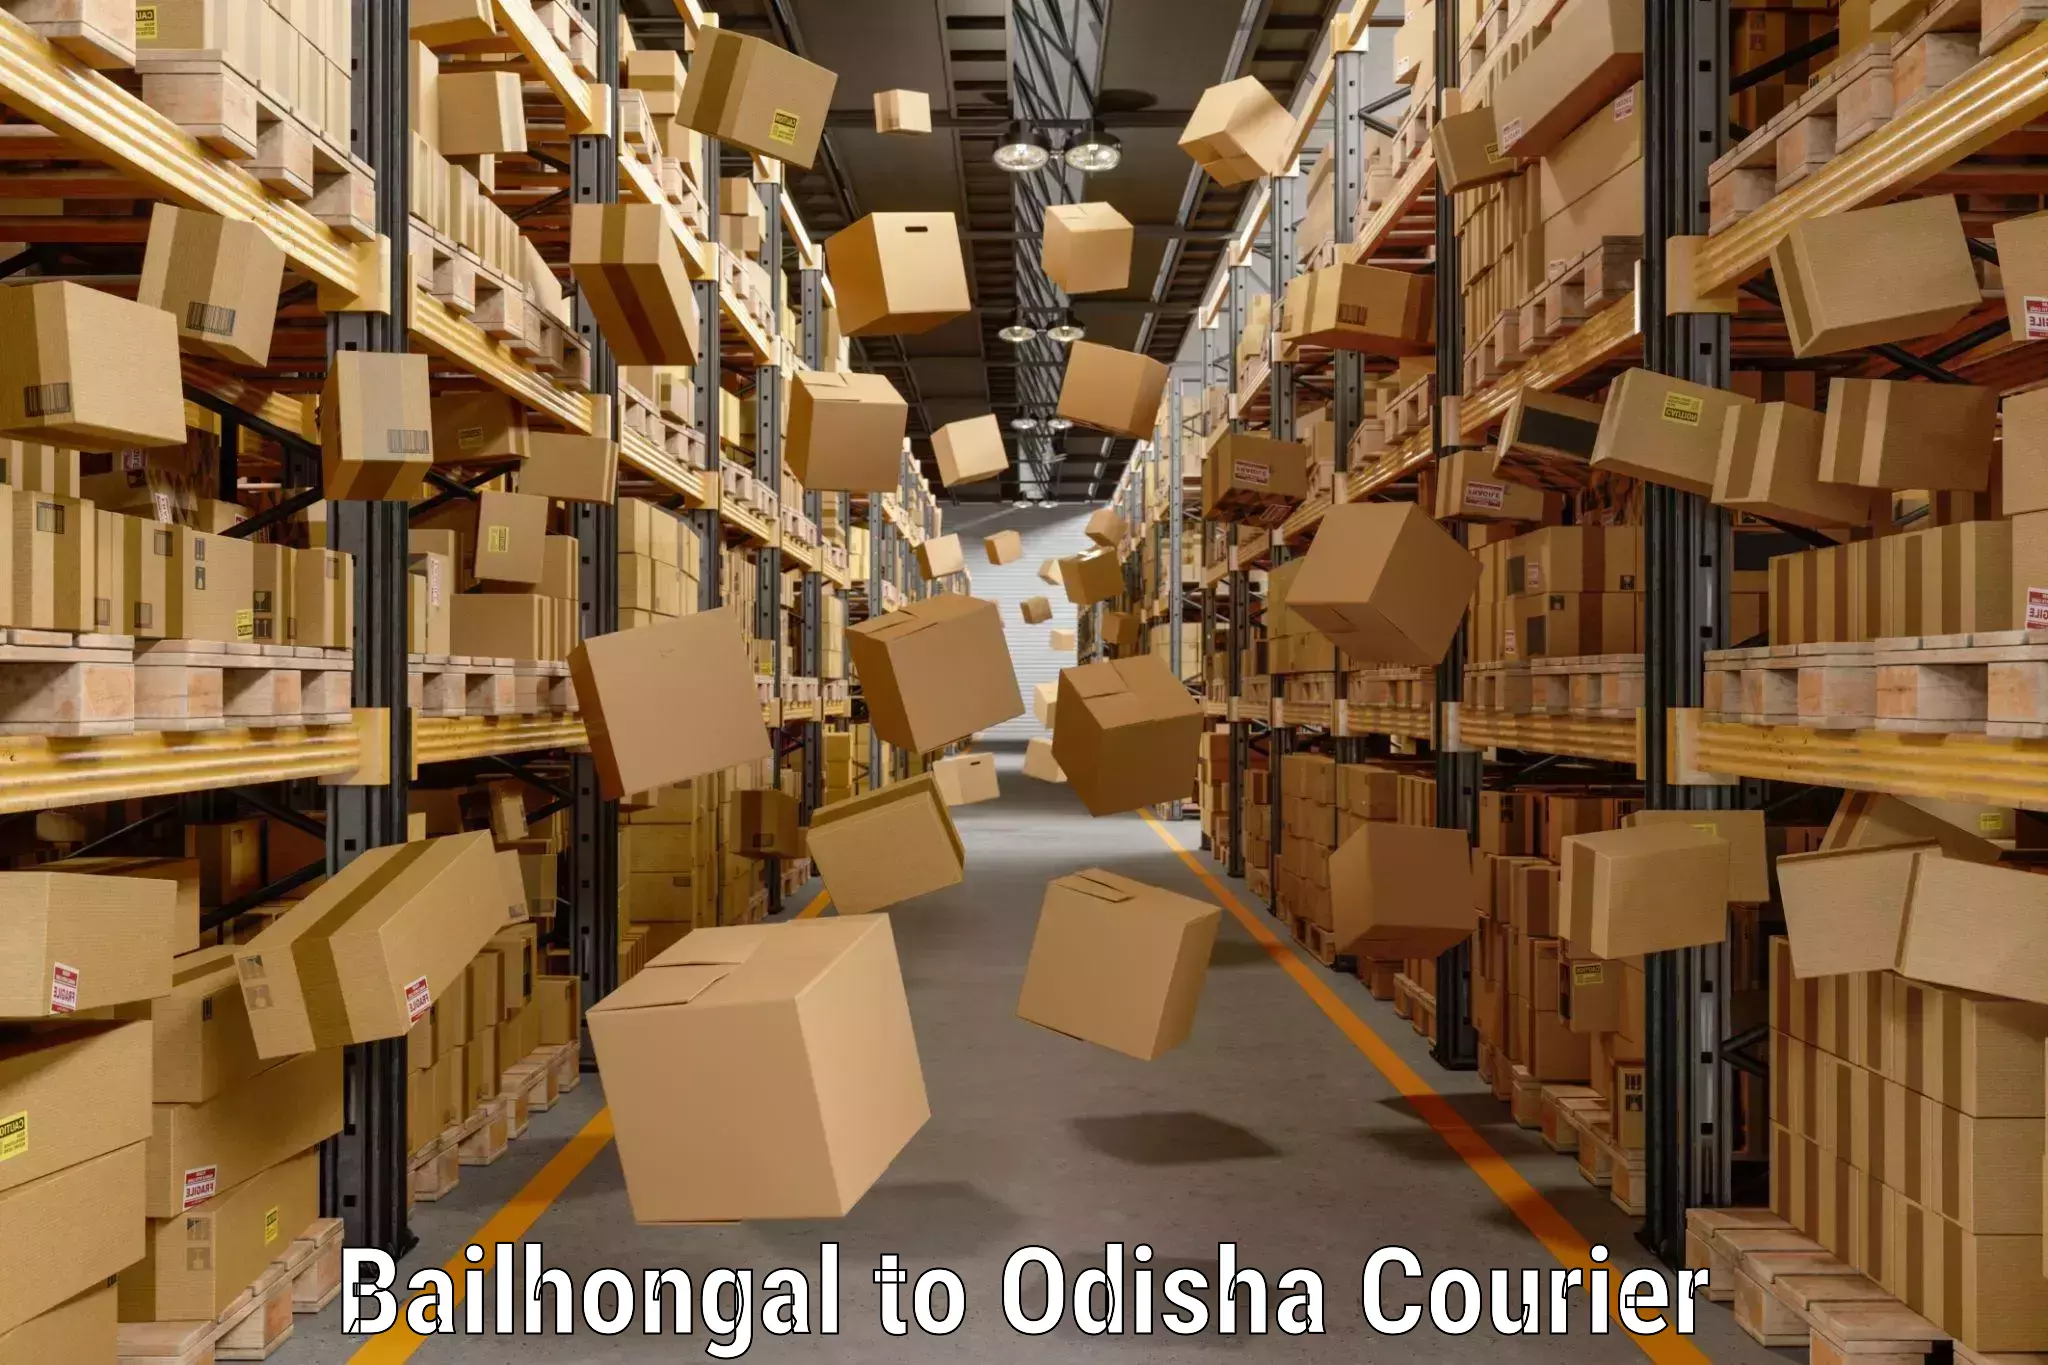 Door-to-door baggage service Bailhongal to Odisha